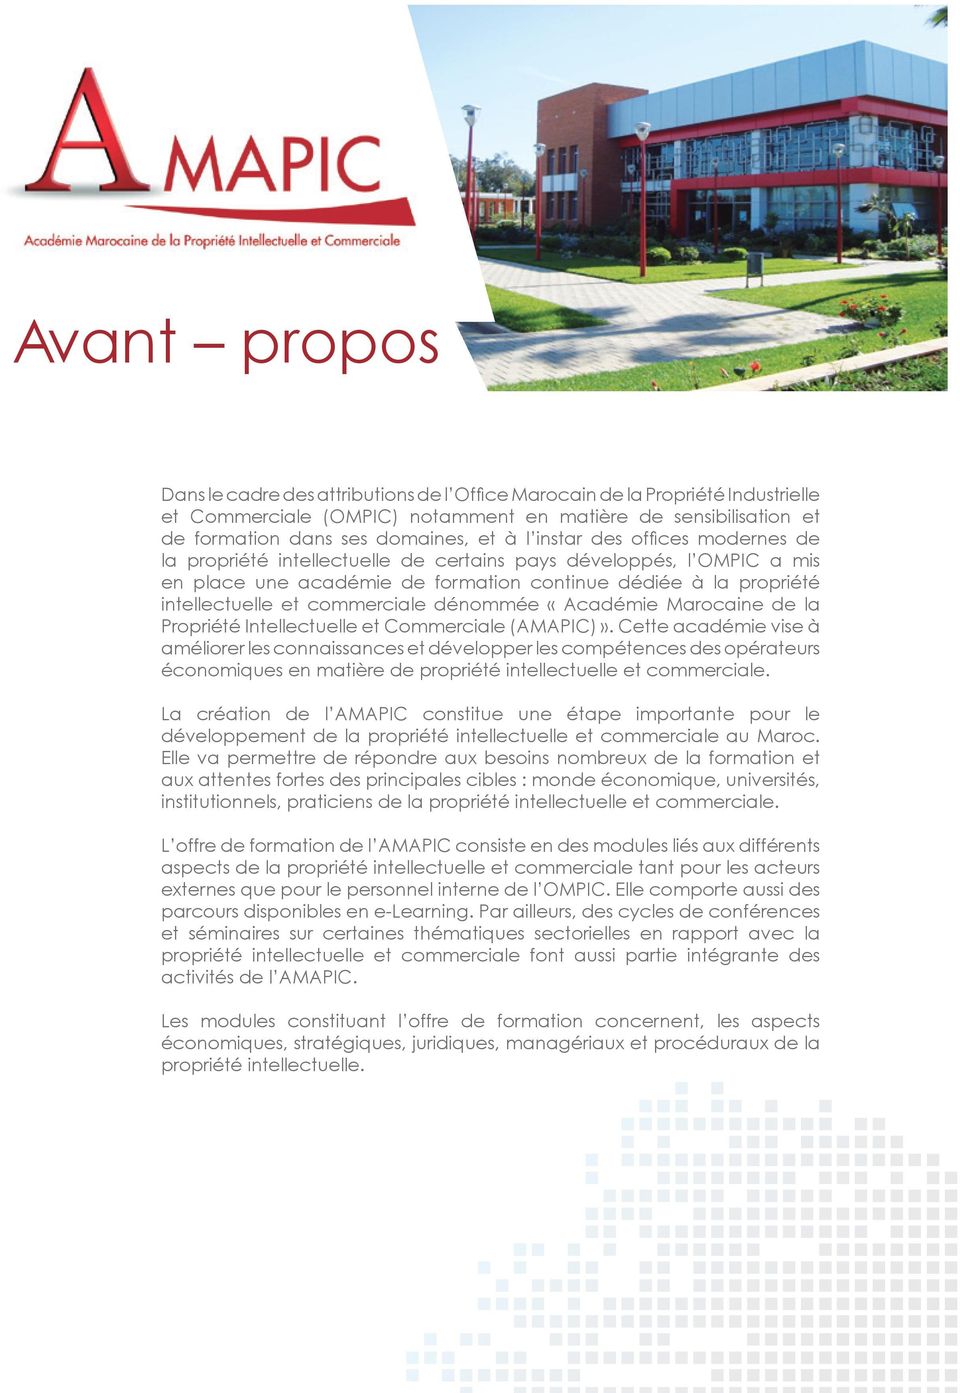 dénommée «Académie Marocaine de la Propriété Intellectuelle et Commerciale (AMAPIC)».